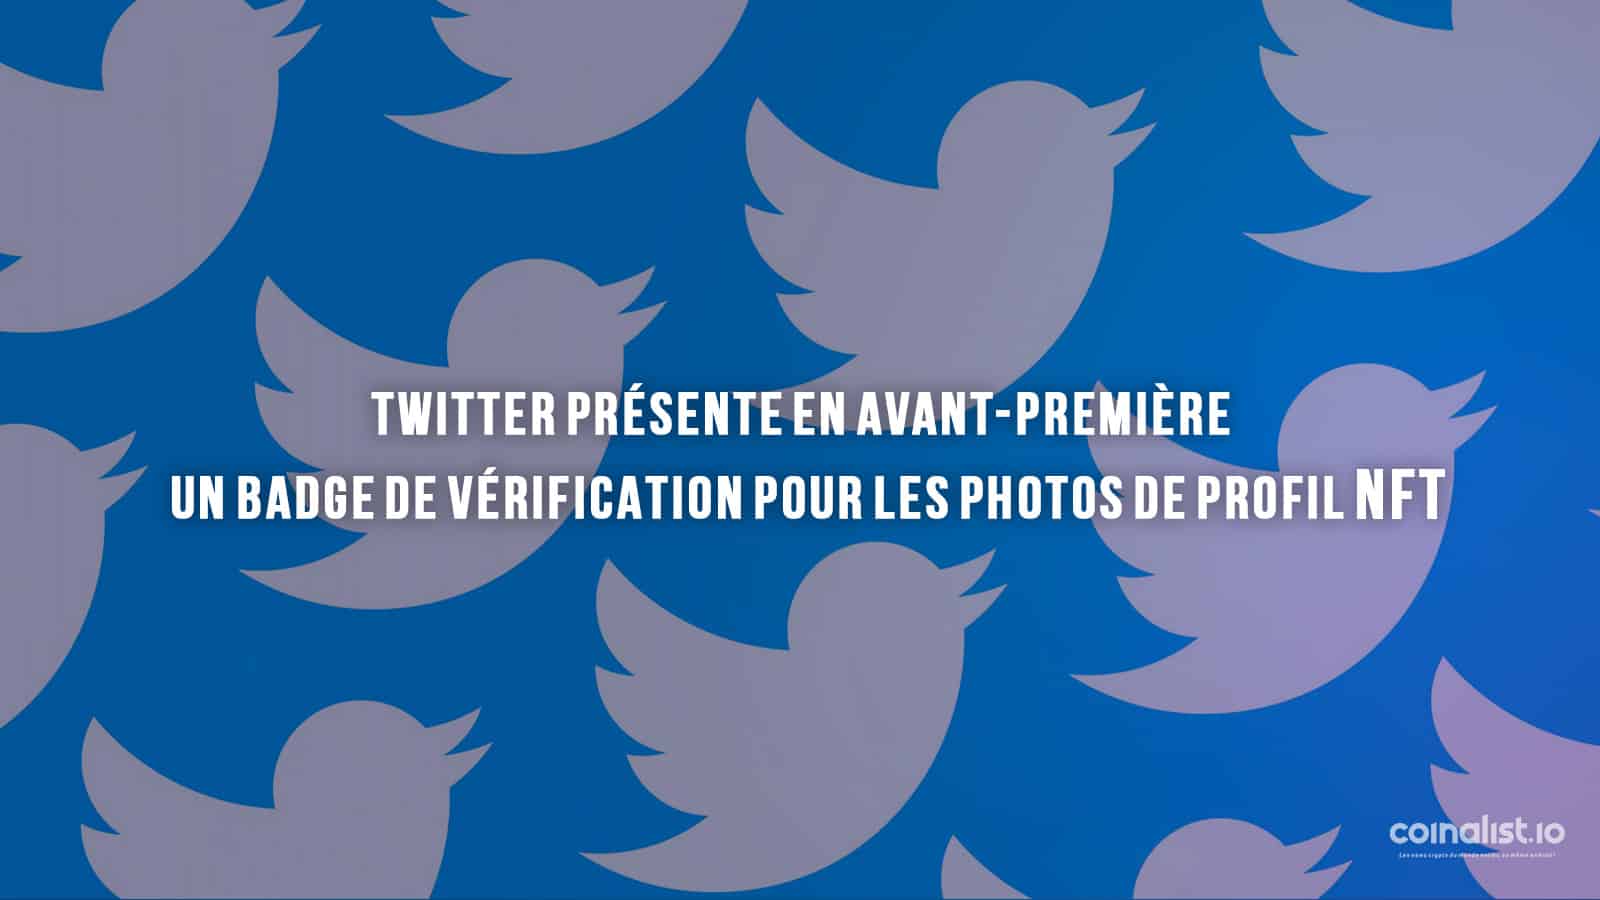 Twitter Présente En Avant-Première Un Badge De Vérification Pour Les Photos De Profil Nft - Concevoir